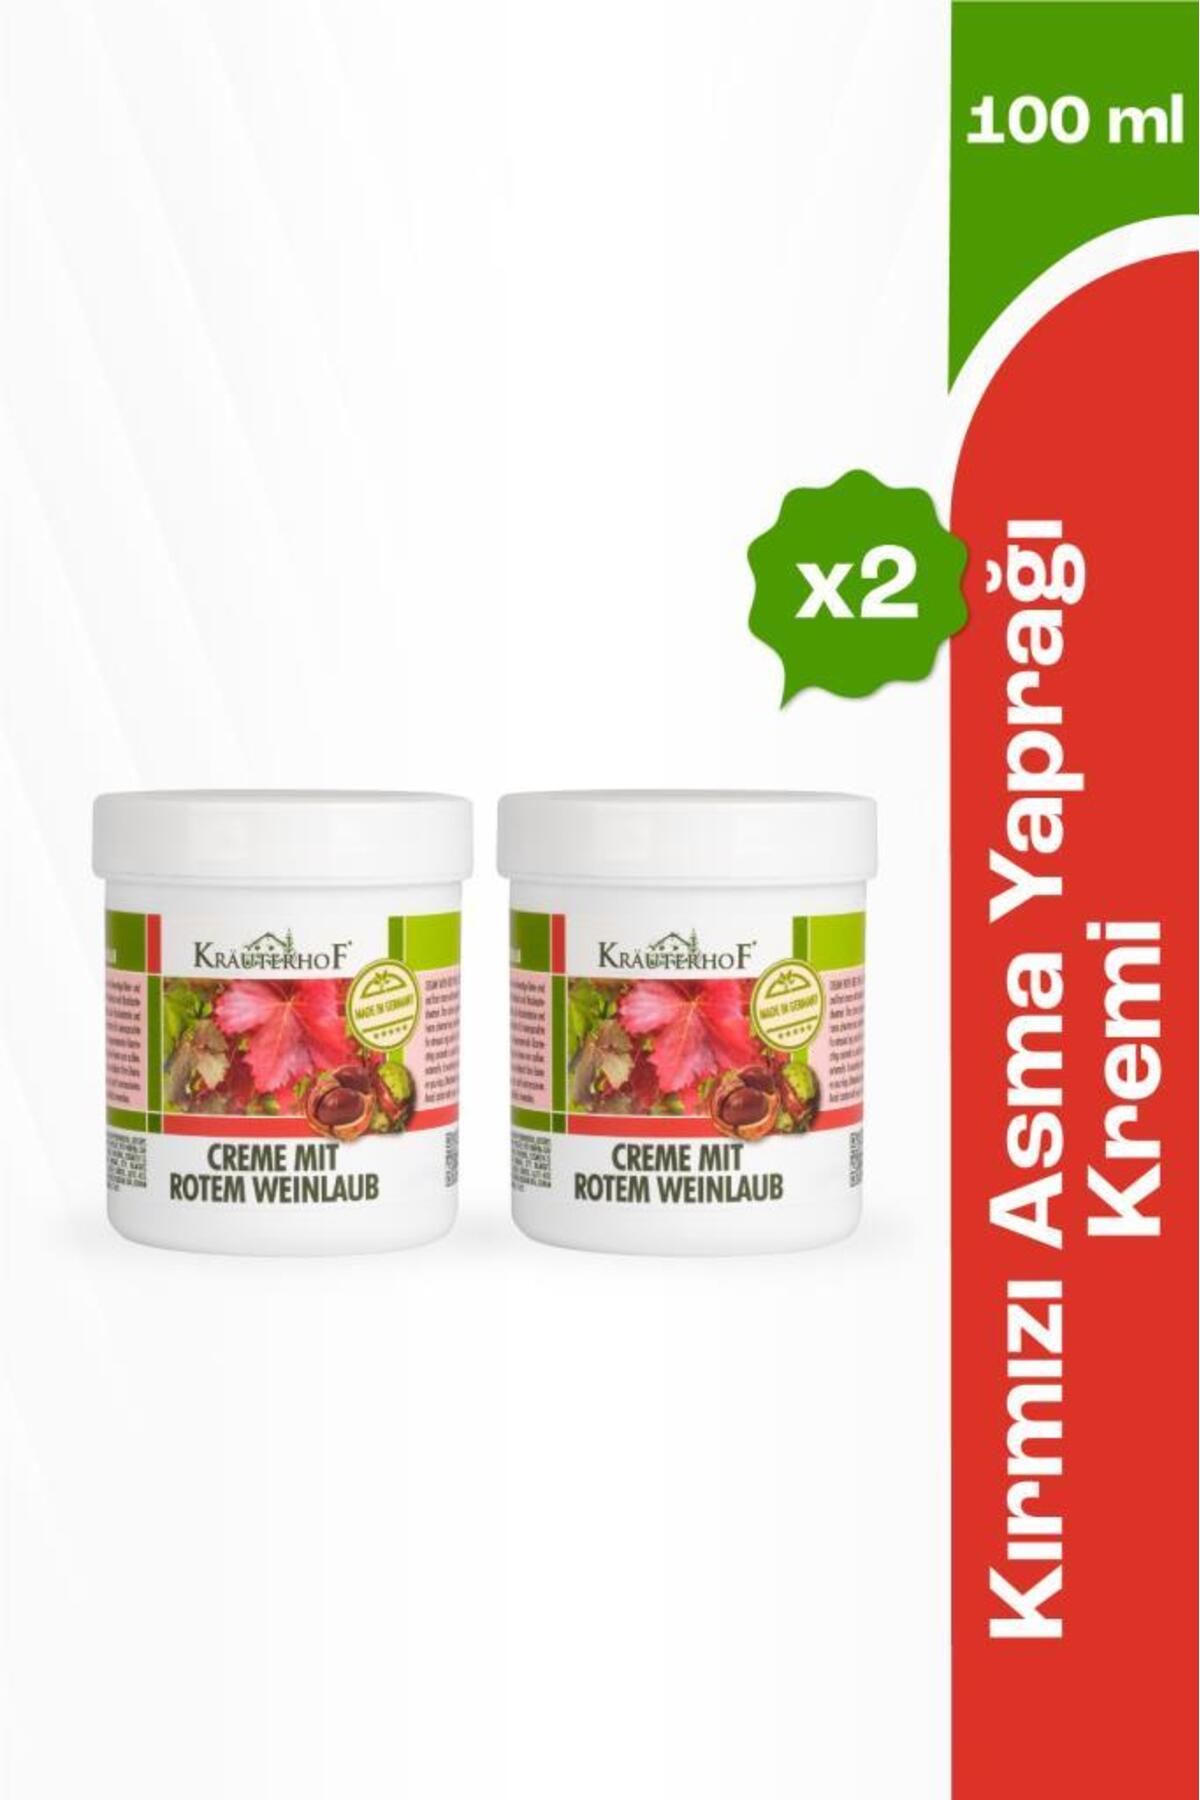 Krauterhof Kırmızı Asma Yaprağı Kremi 100 ml x2 Adet